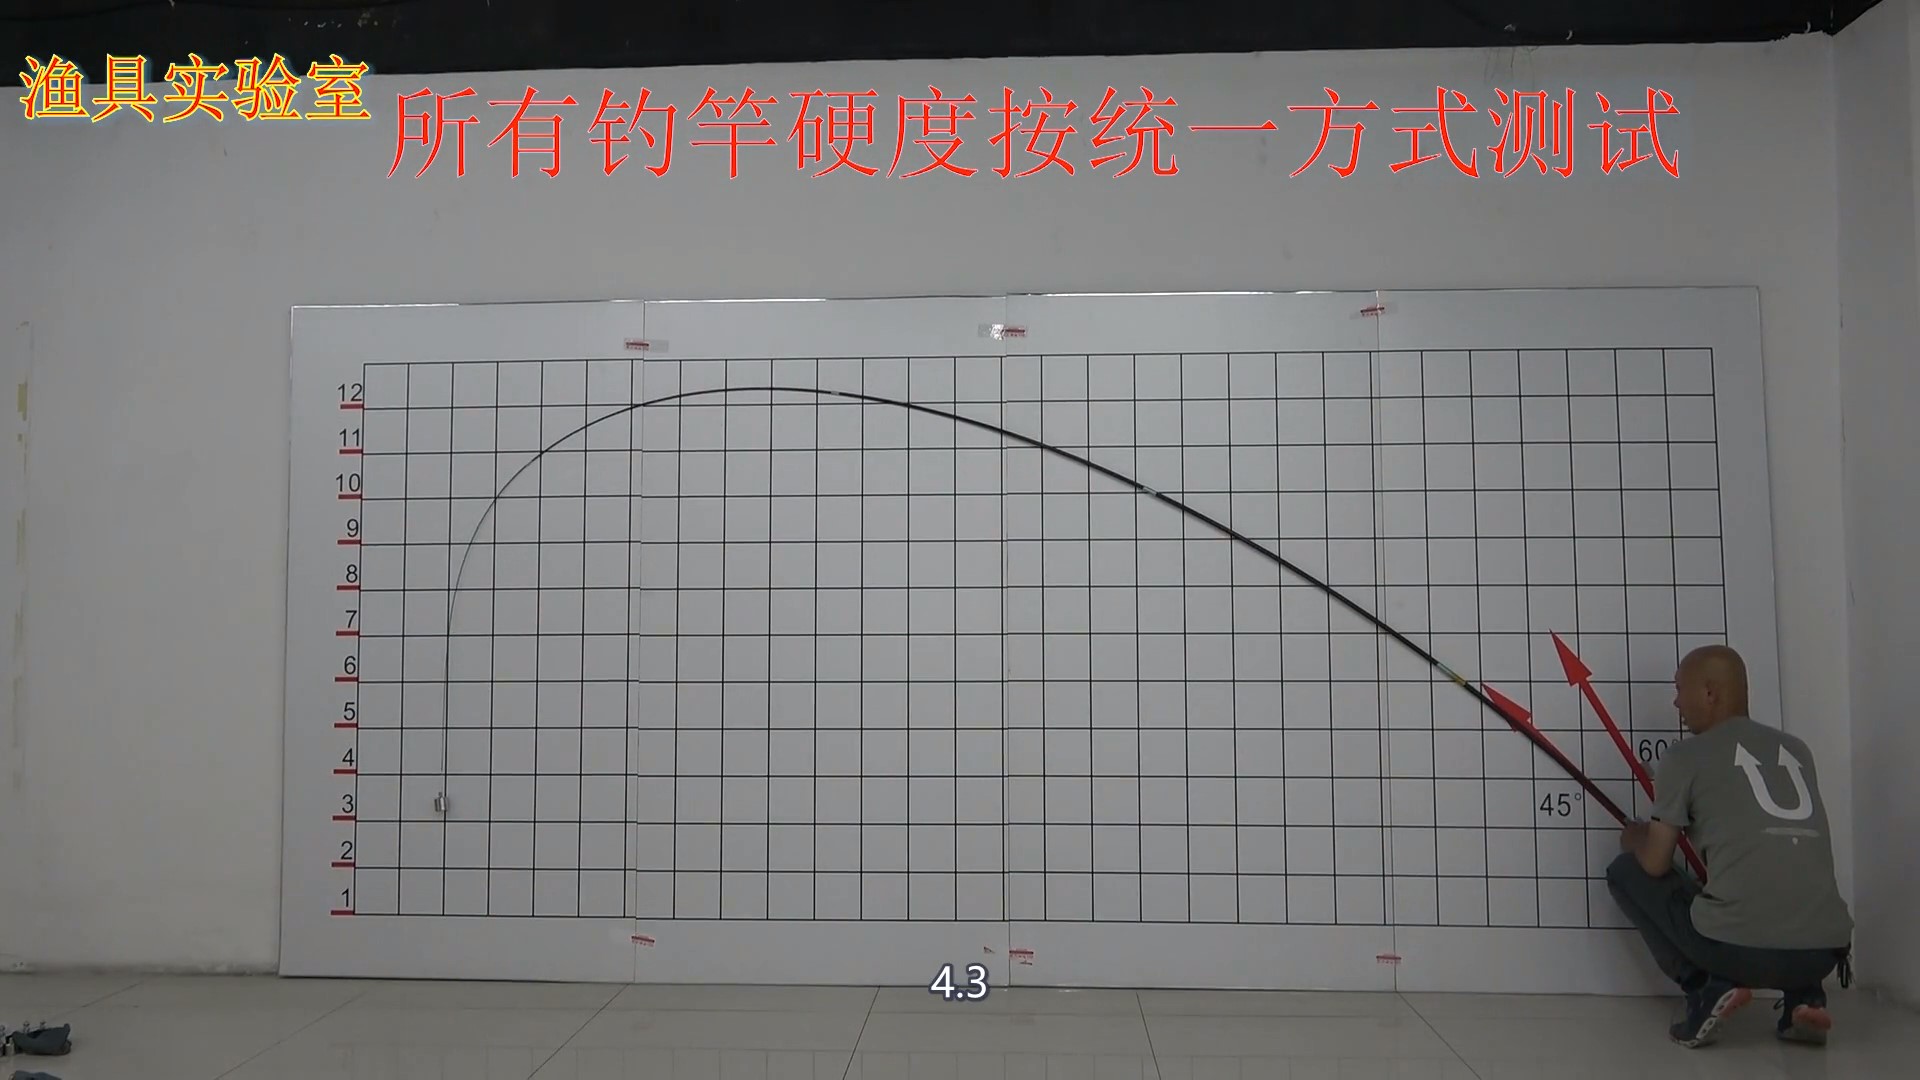 汉鼎这个性价比的品牌又一力作-汉鼎战5.4米钓竿评测